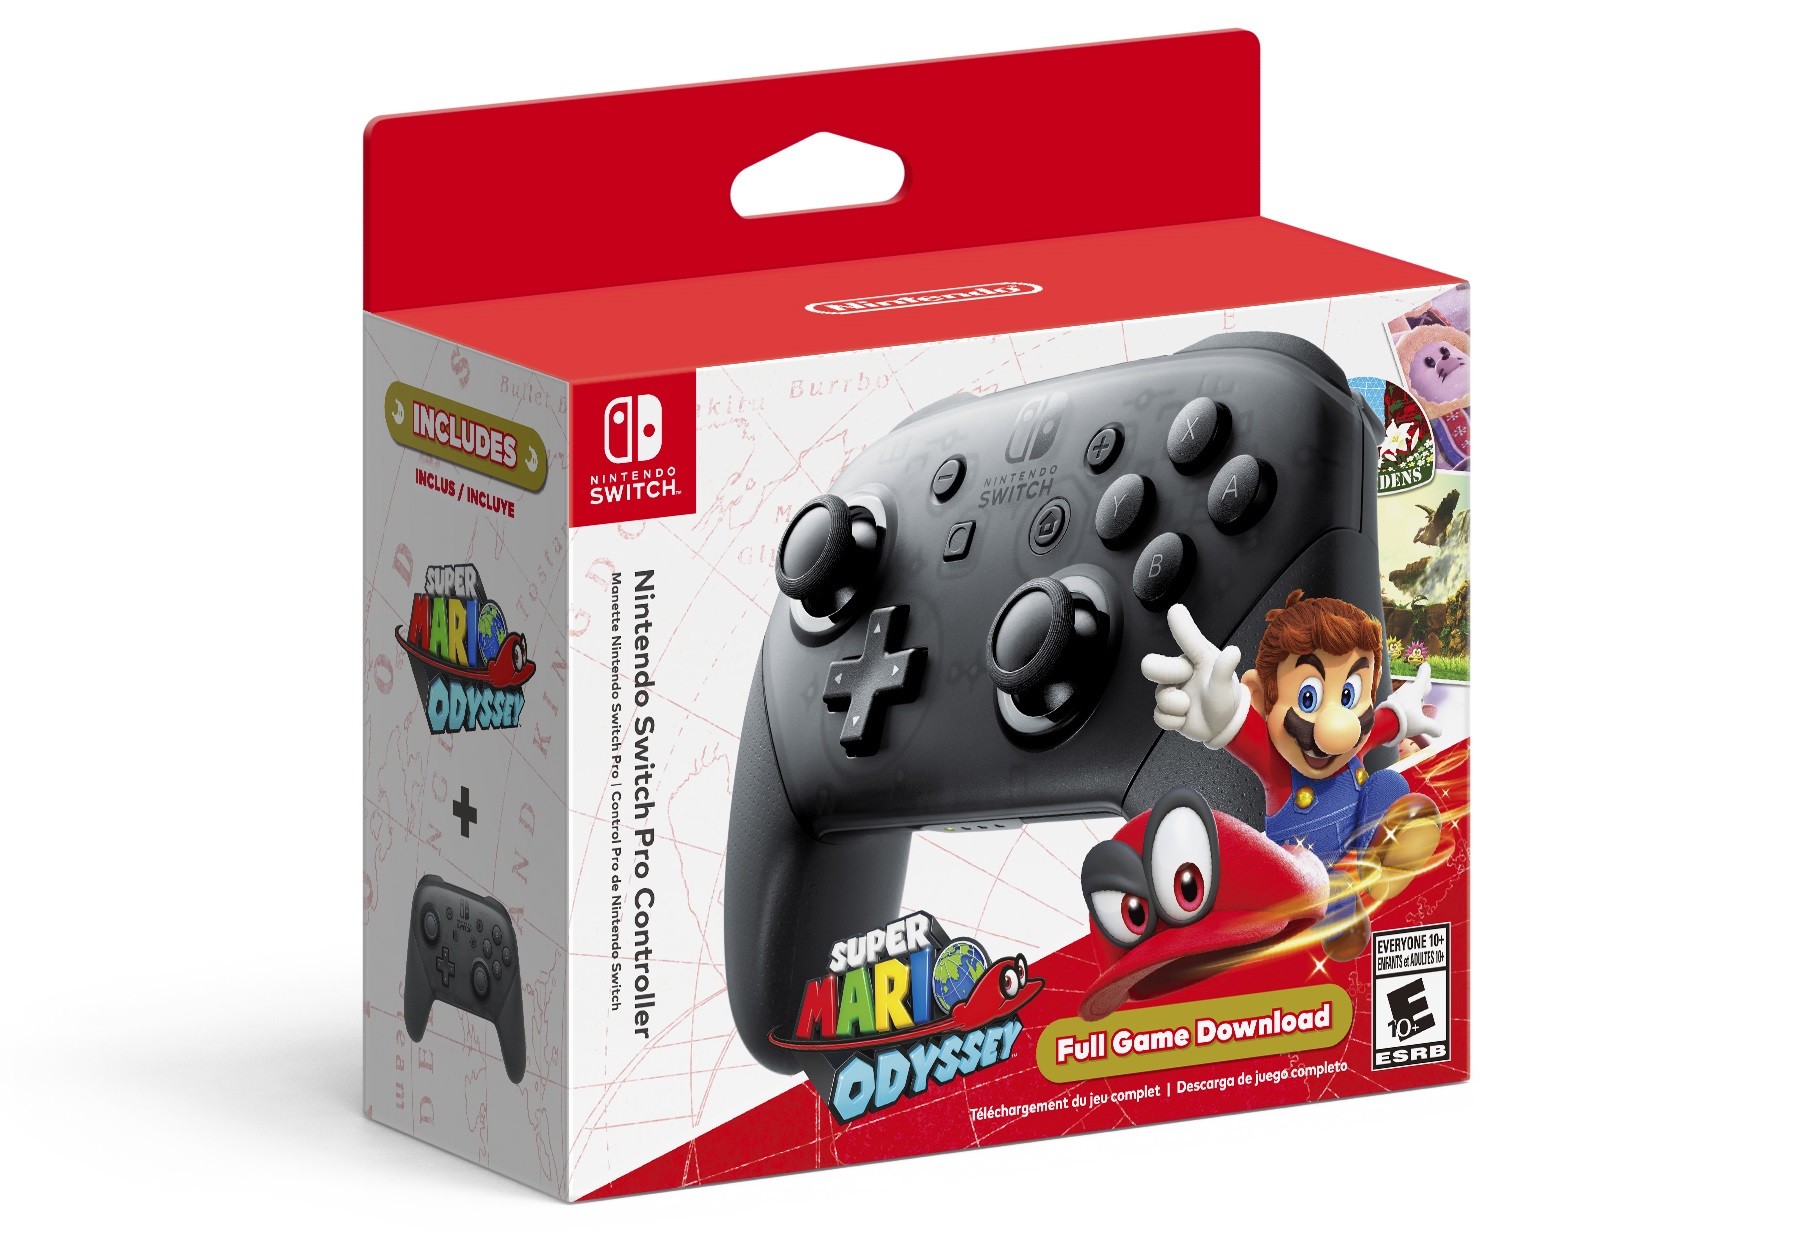 Une manette Switch Pro vendue en bundle avec un code de Super Mario Odyssey  - Nintendo Switch - Nintendo-Master